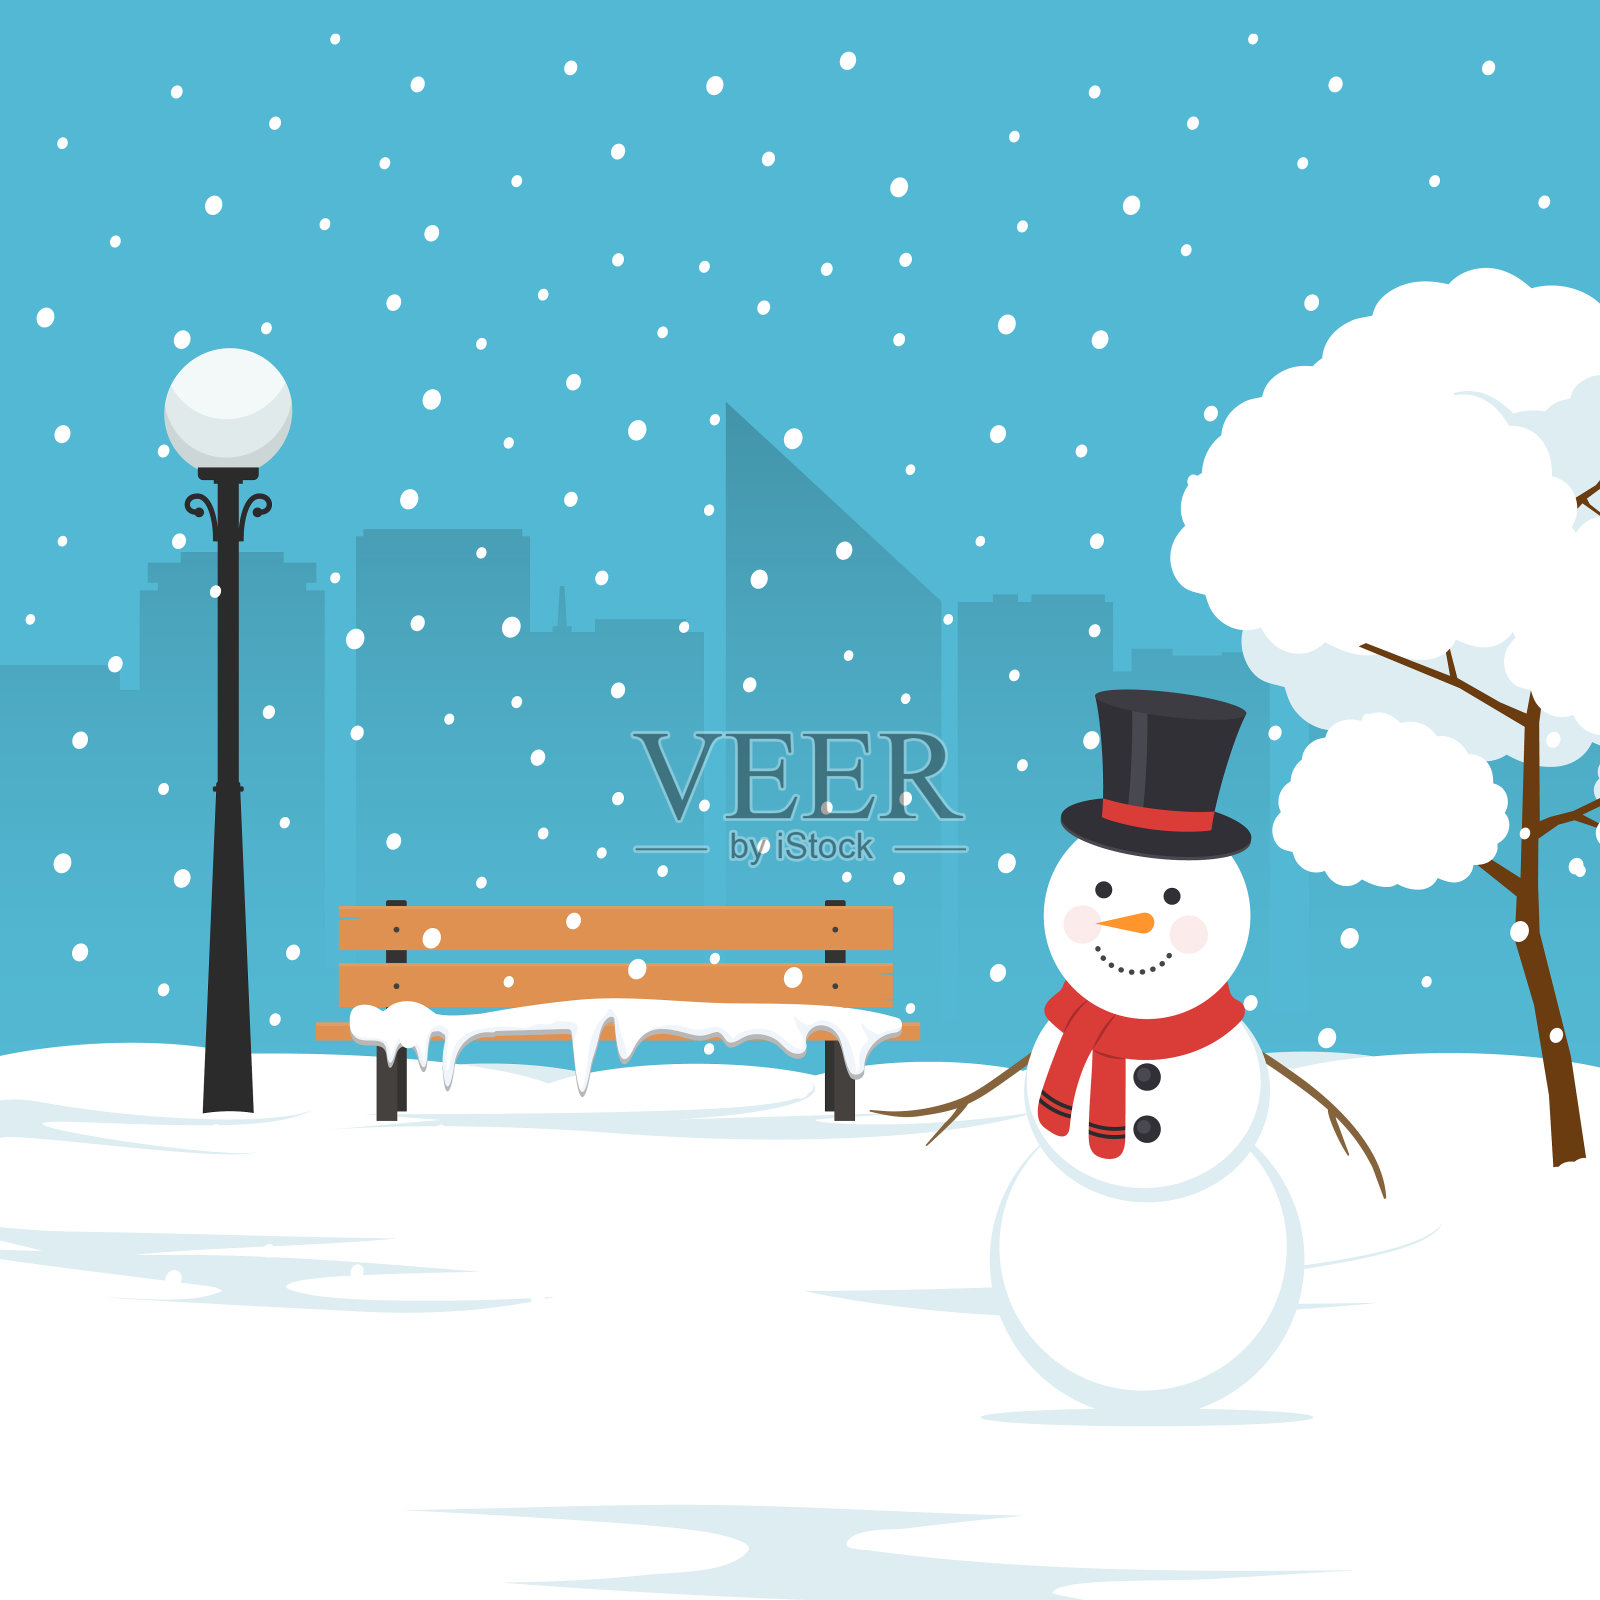 雪人、公园长椅和被雪覆盖的树木。城市公园的冬季景观。圣诞节的背景。背景图片素材